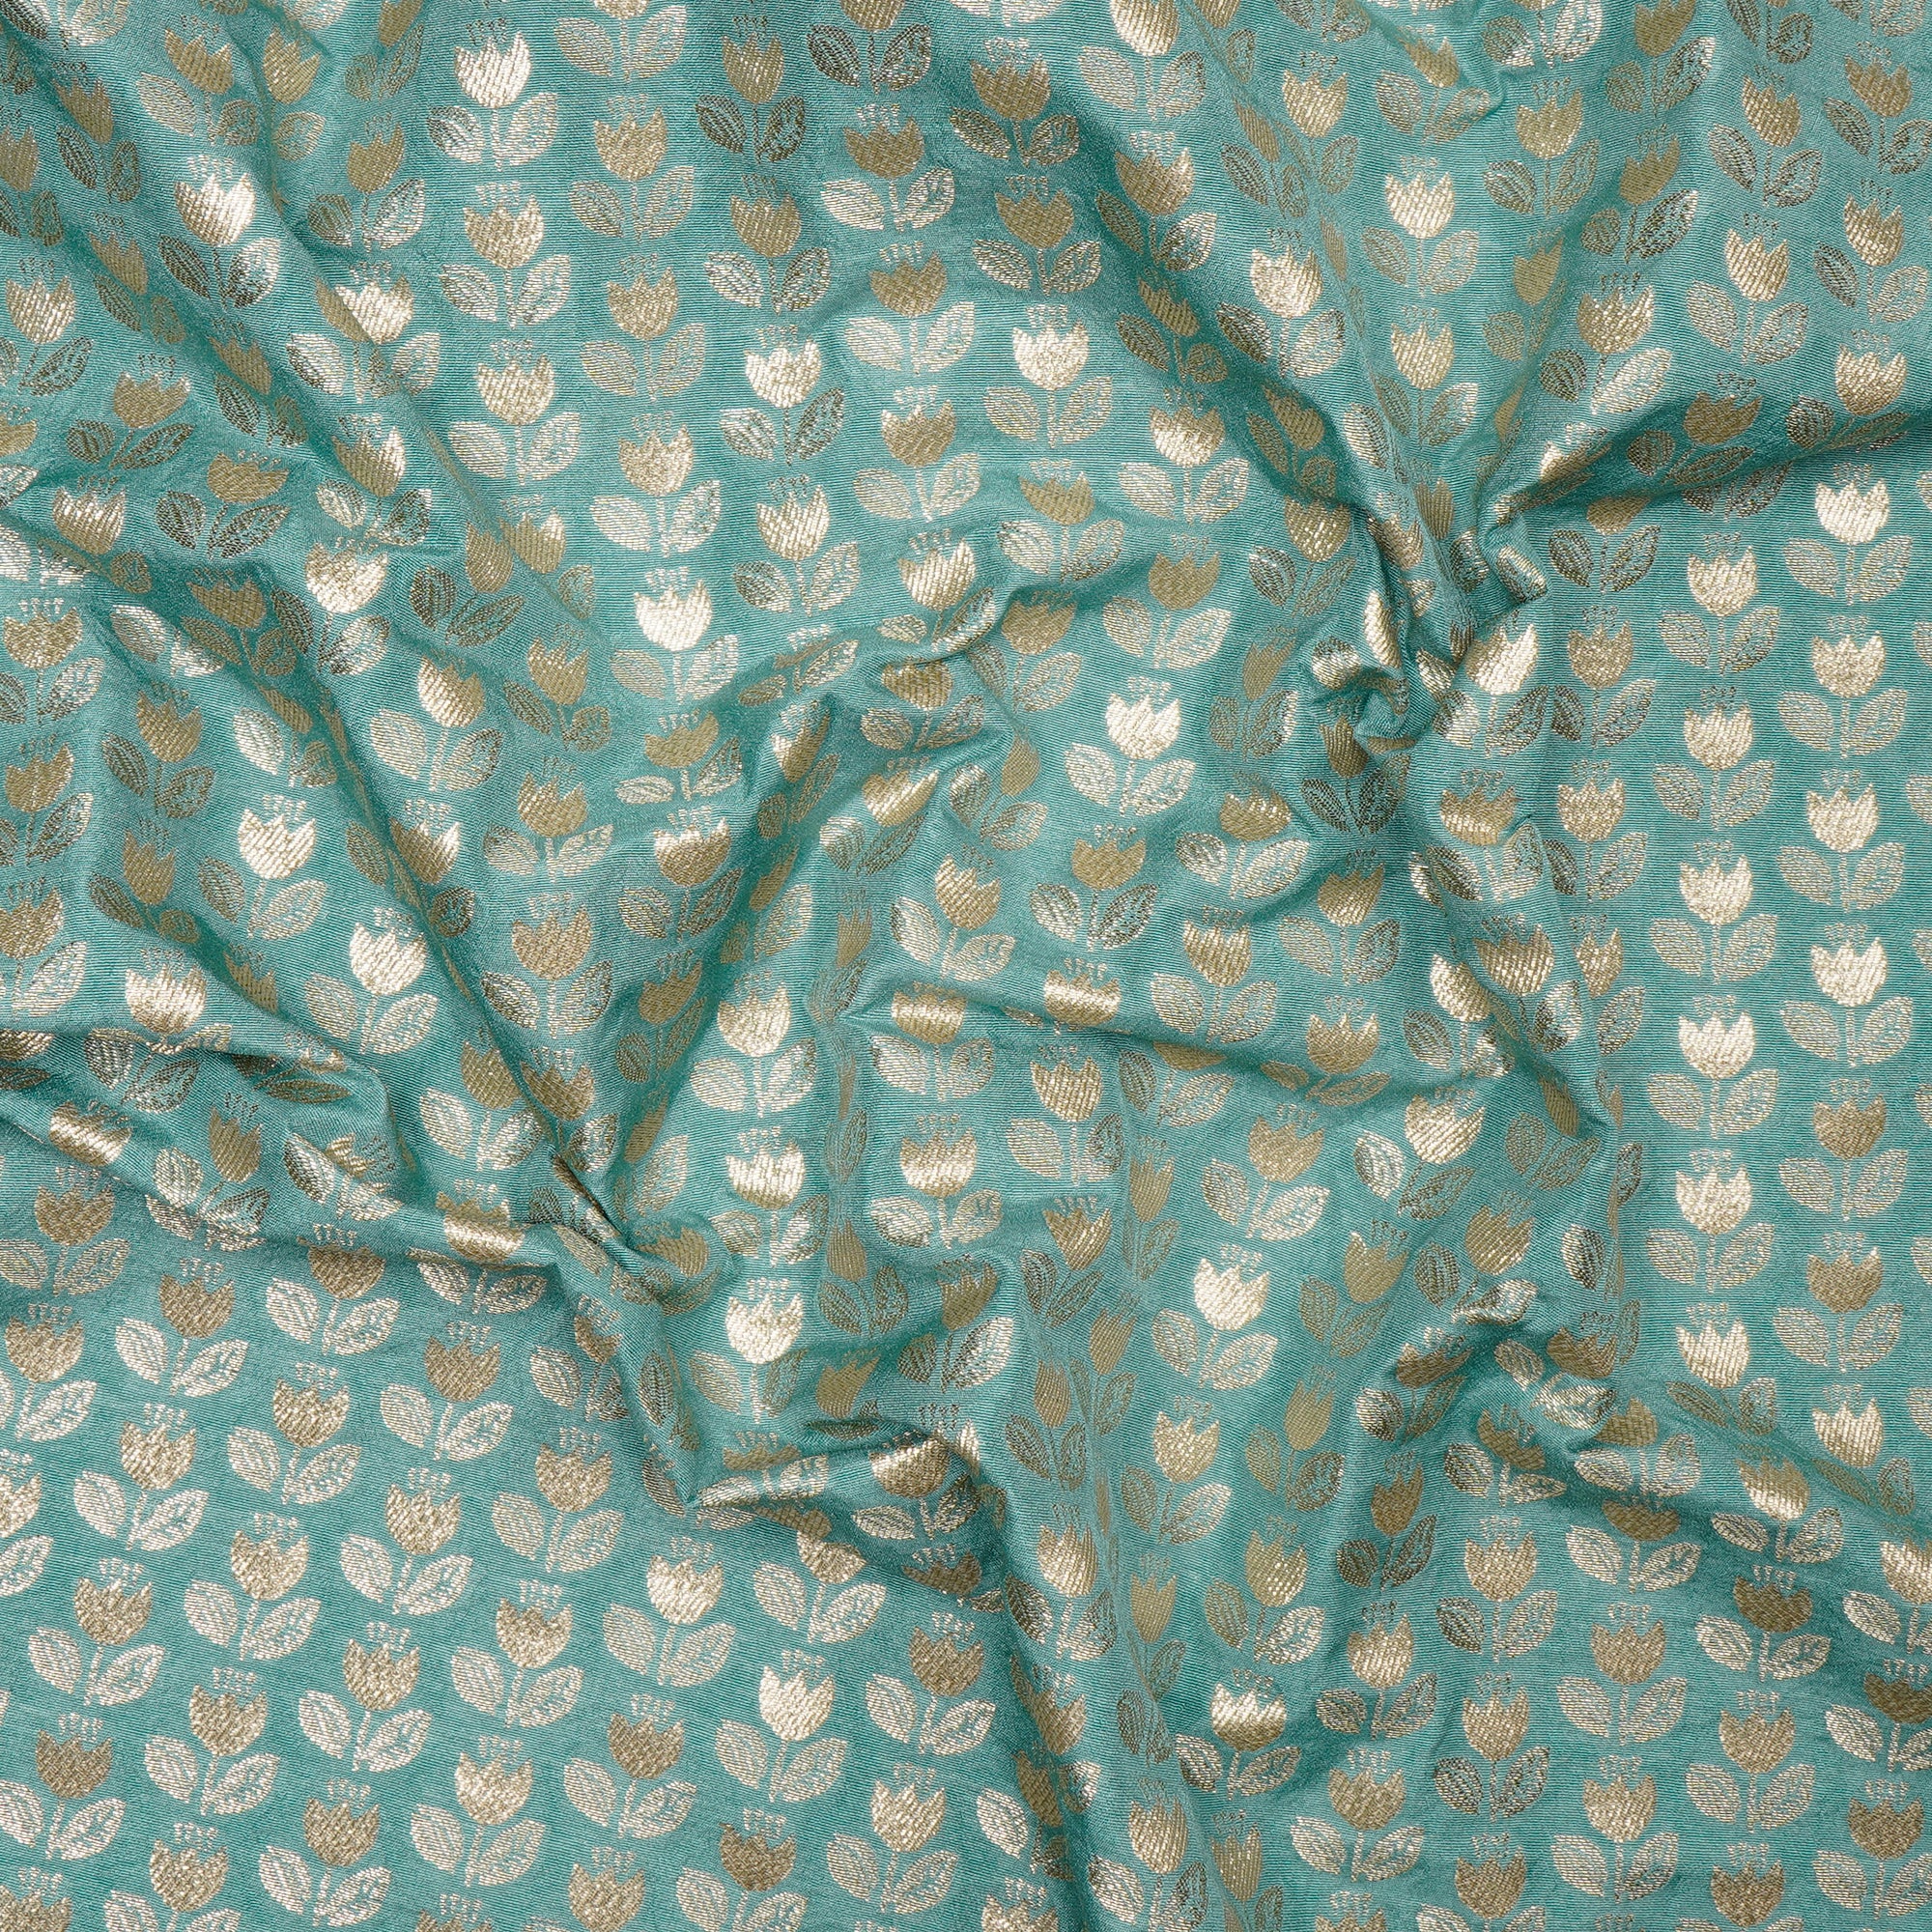 Wasabi Floral Booti Pattern Blended Banarasi Brocade Fabric